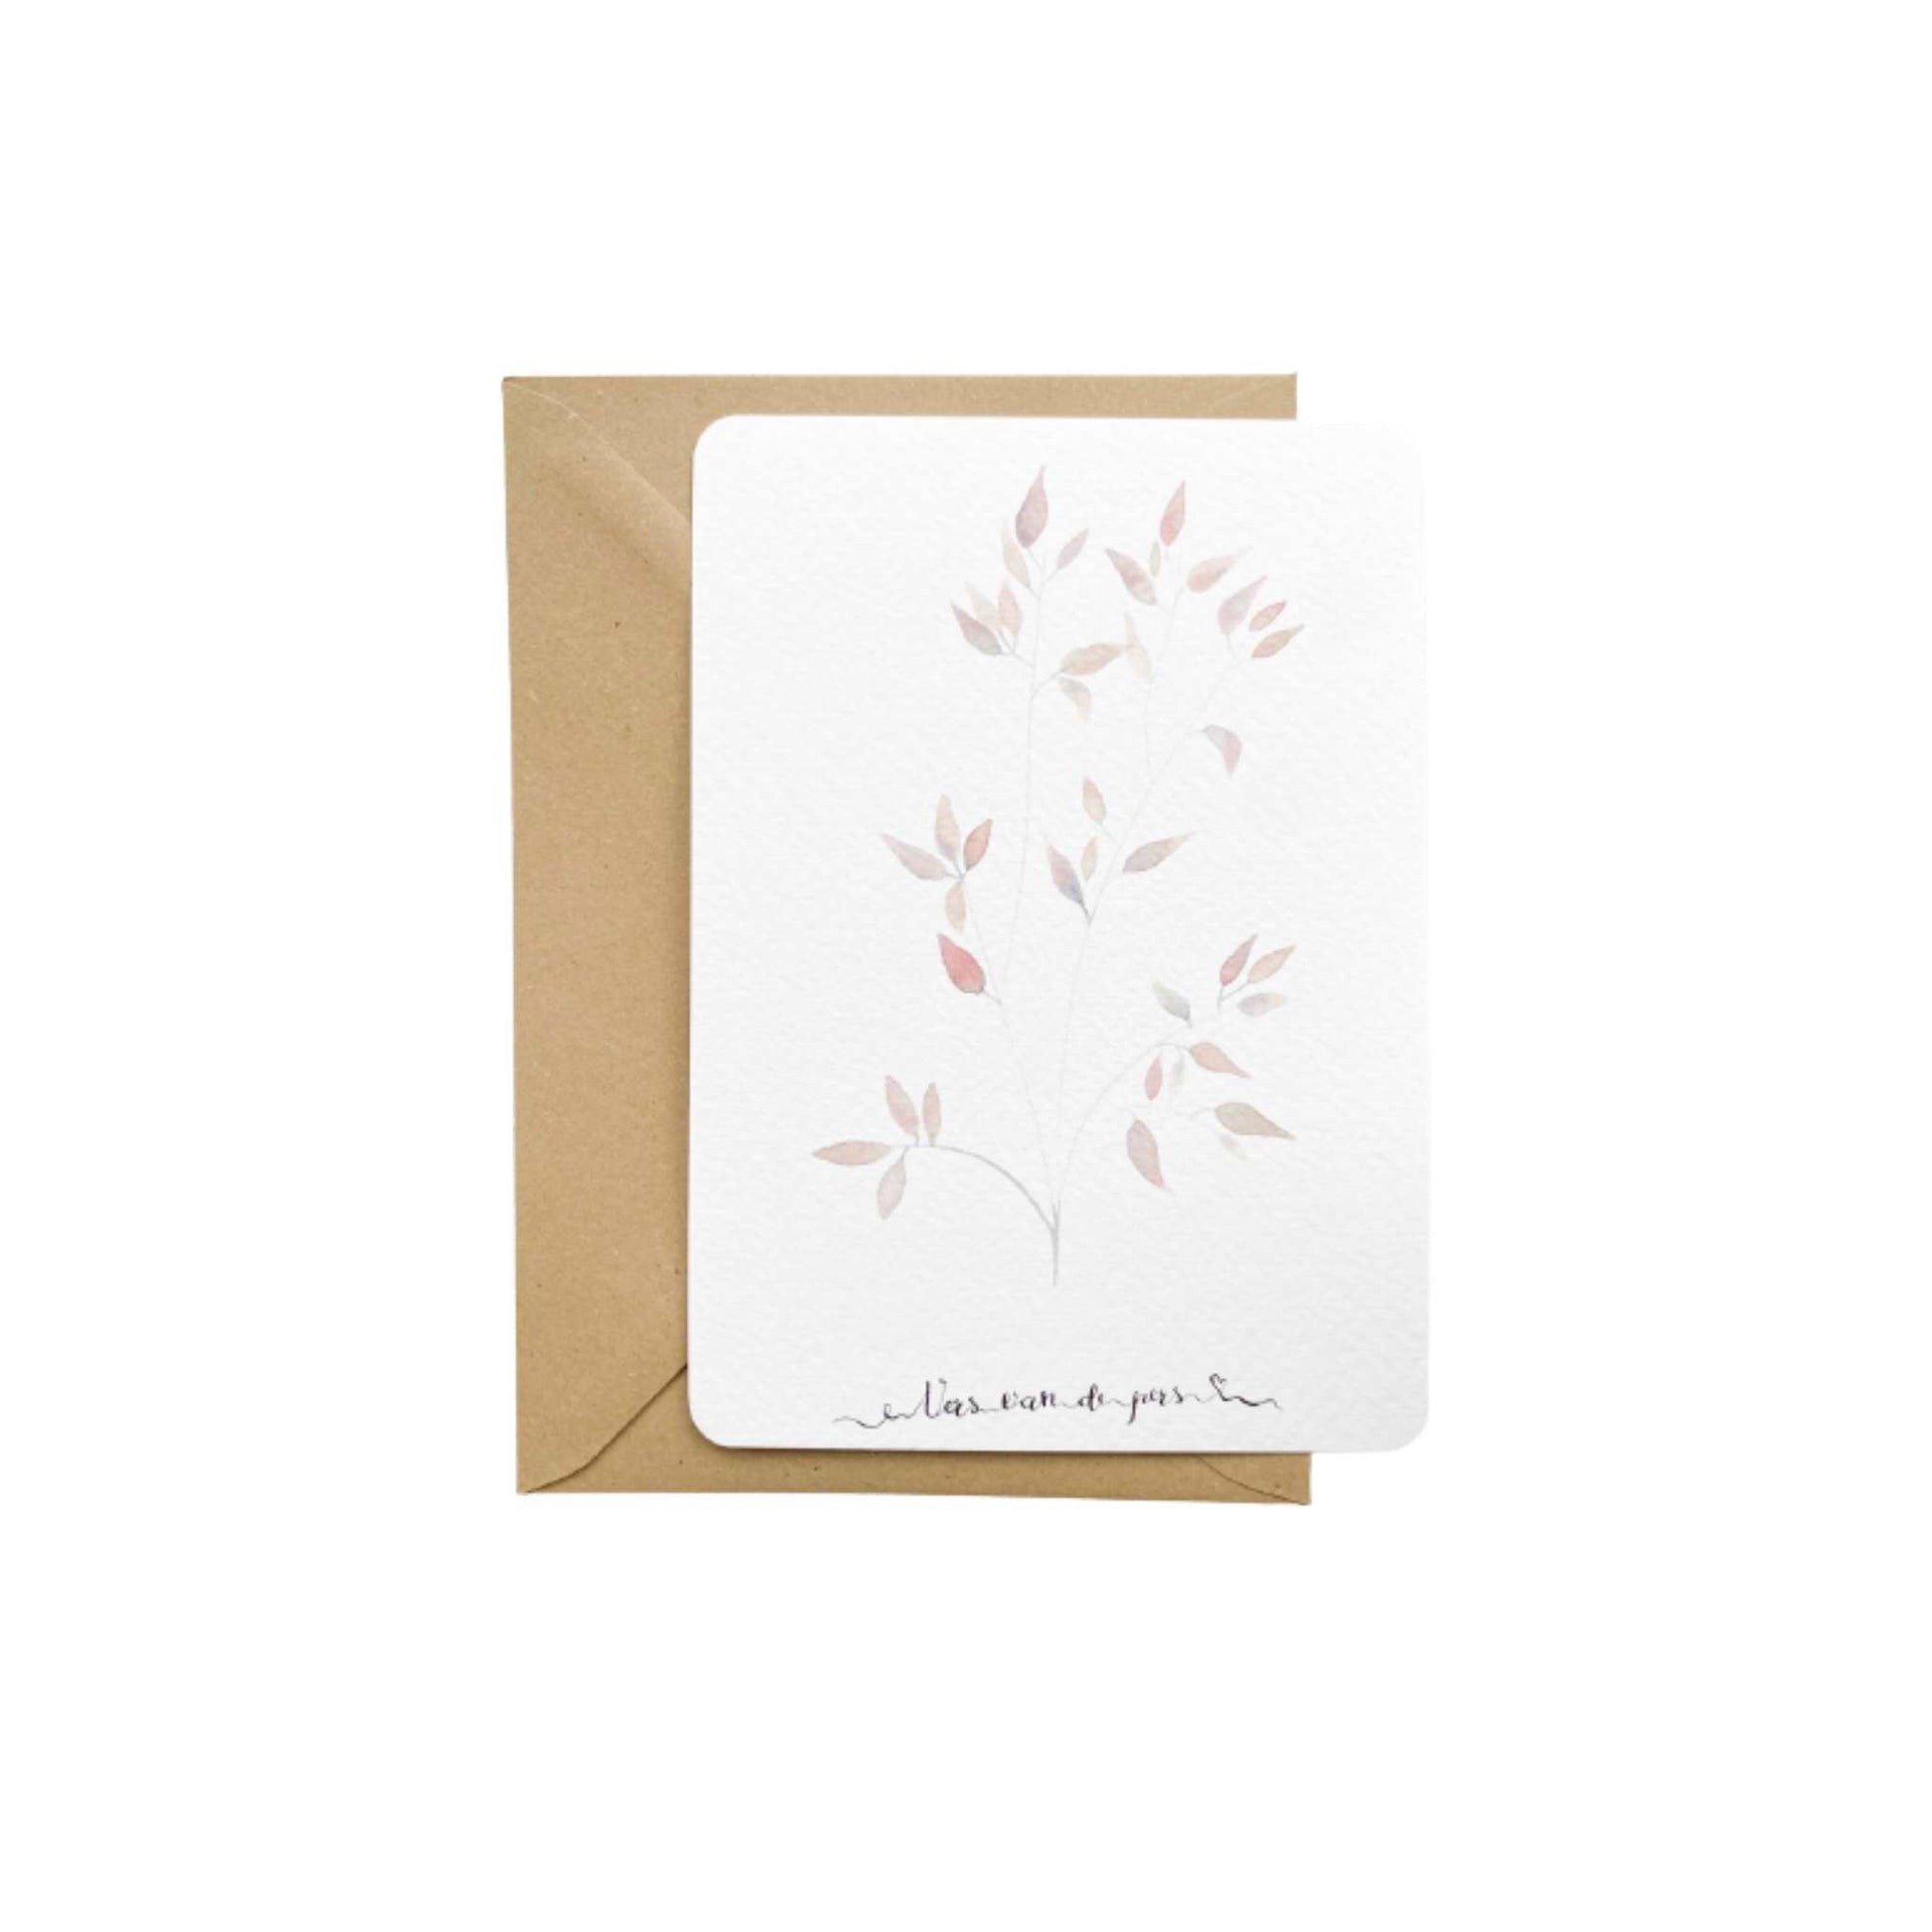 Vers van de pers | Witte A6-kaart met fijne, lila takjes aquarel